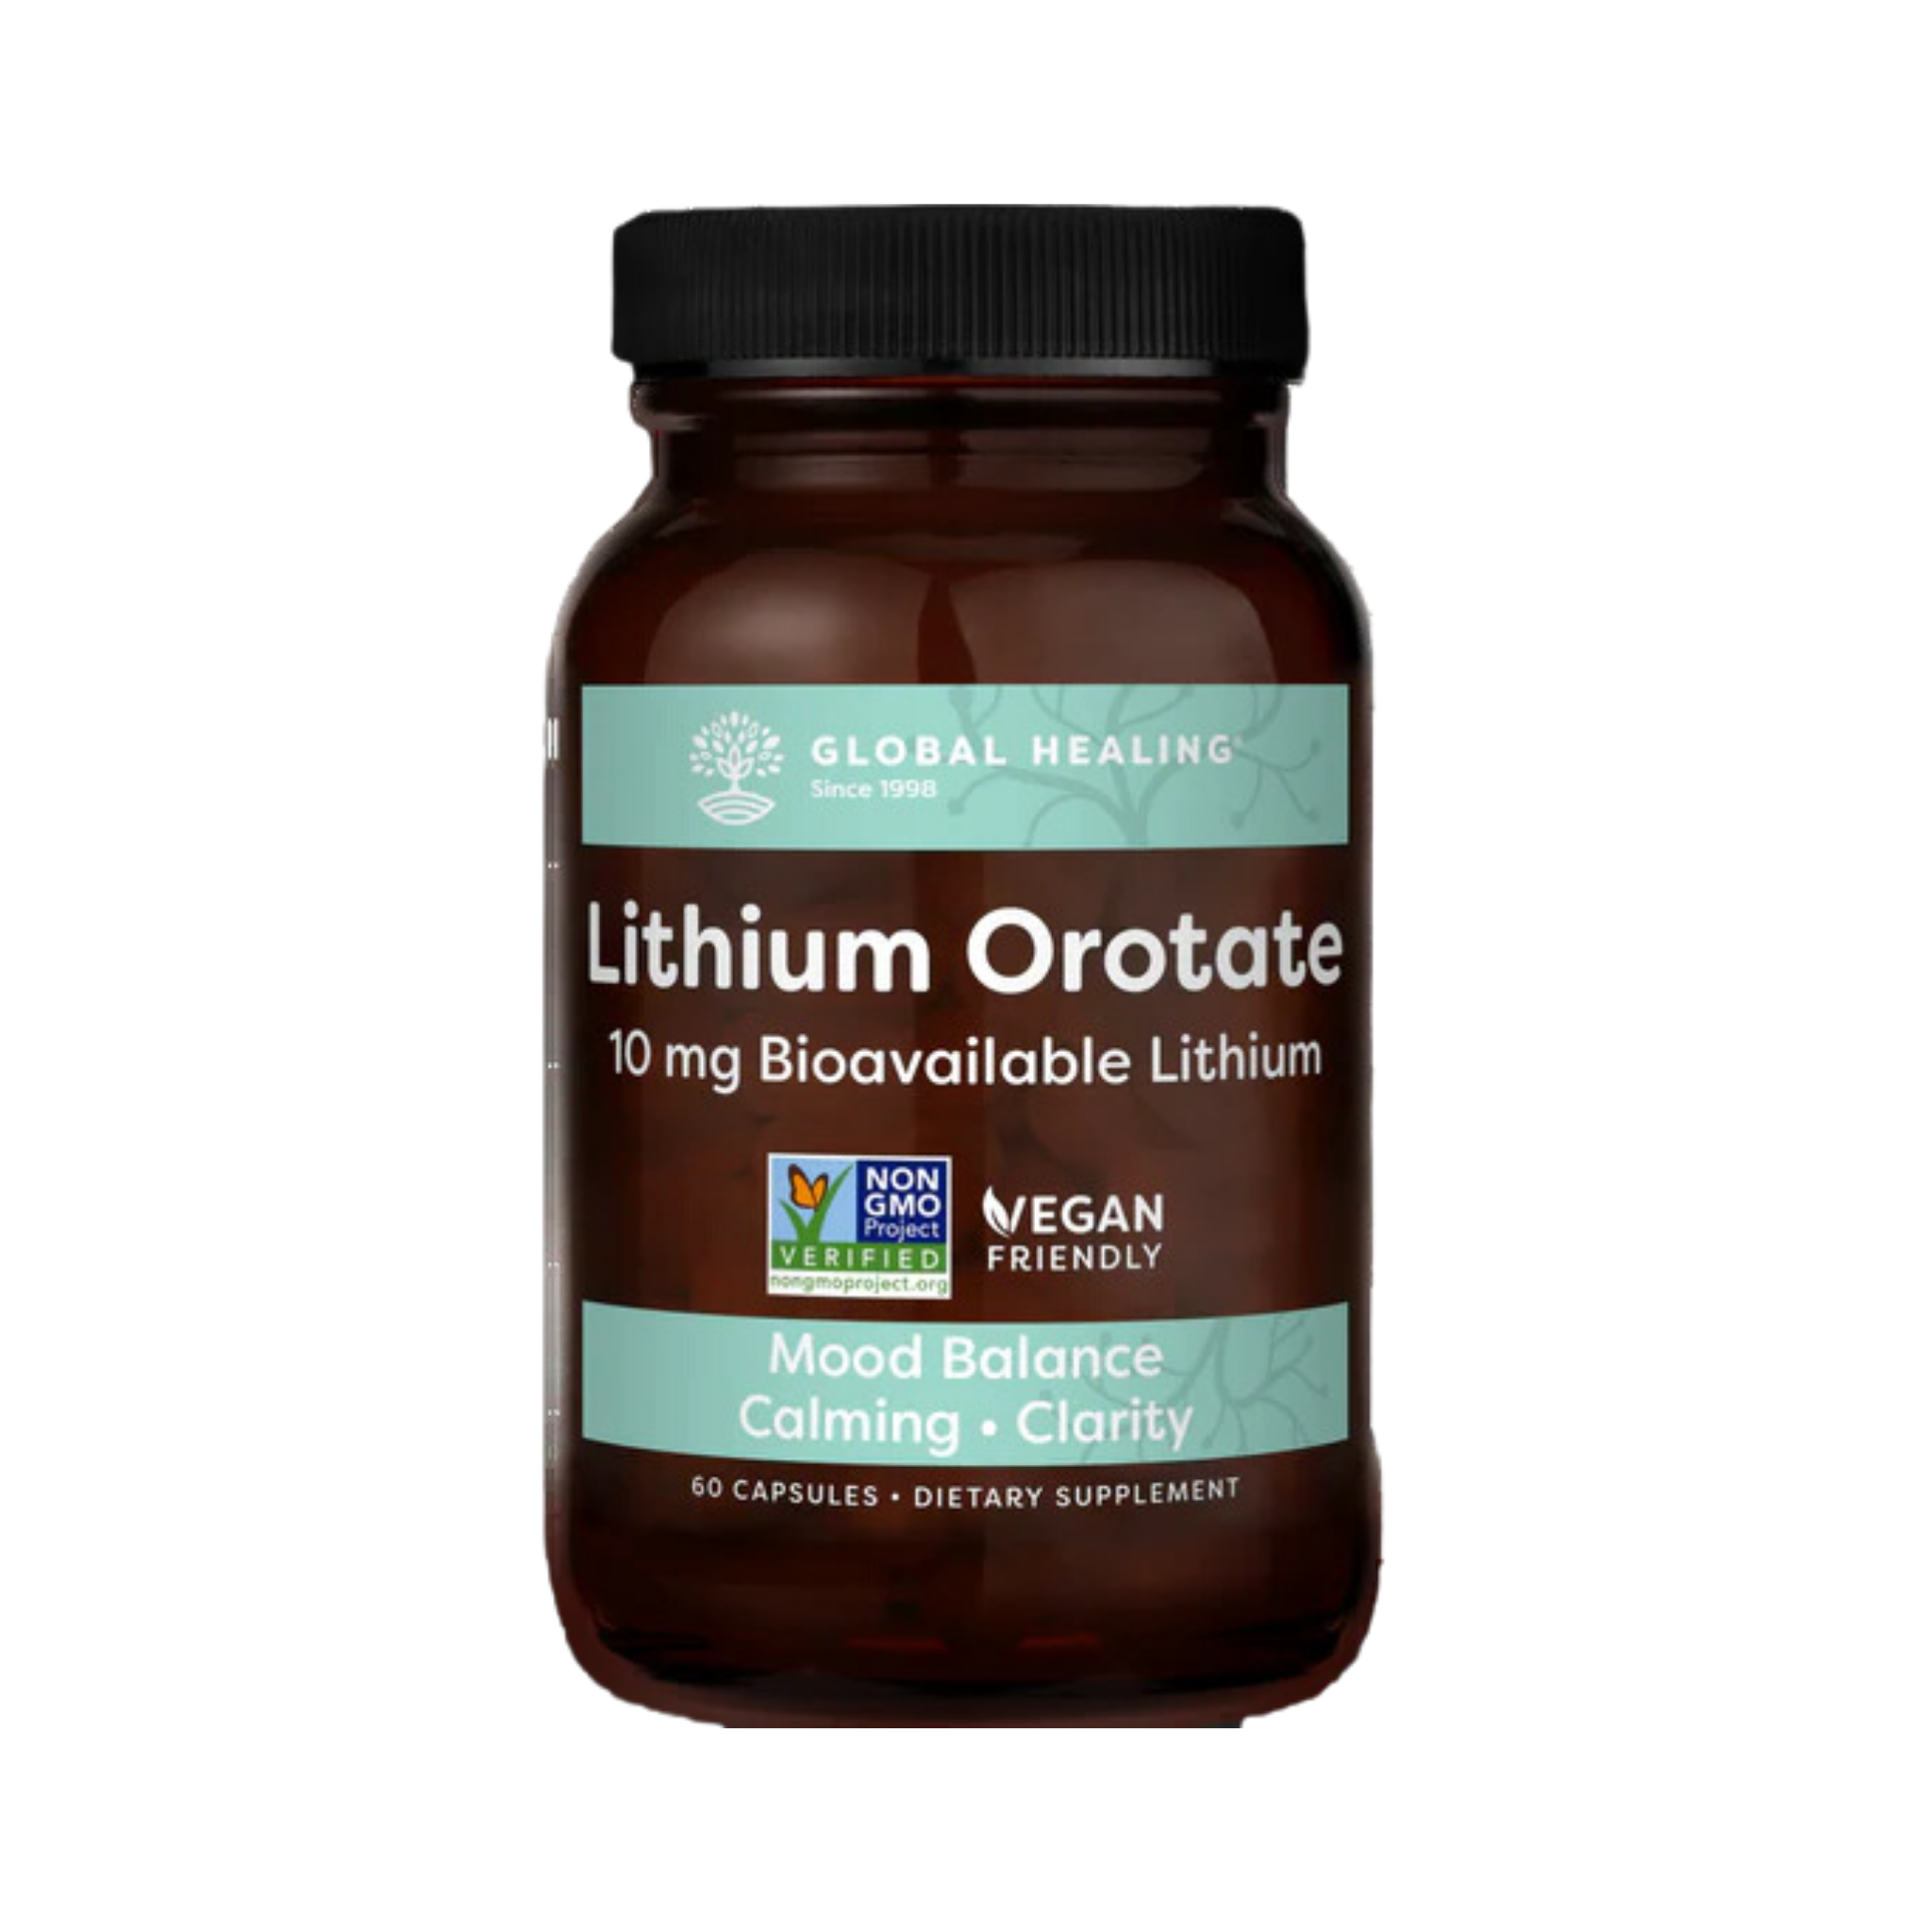 Lithium Orotate 60 Capsules